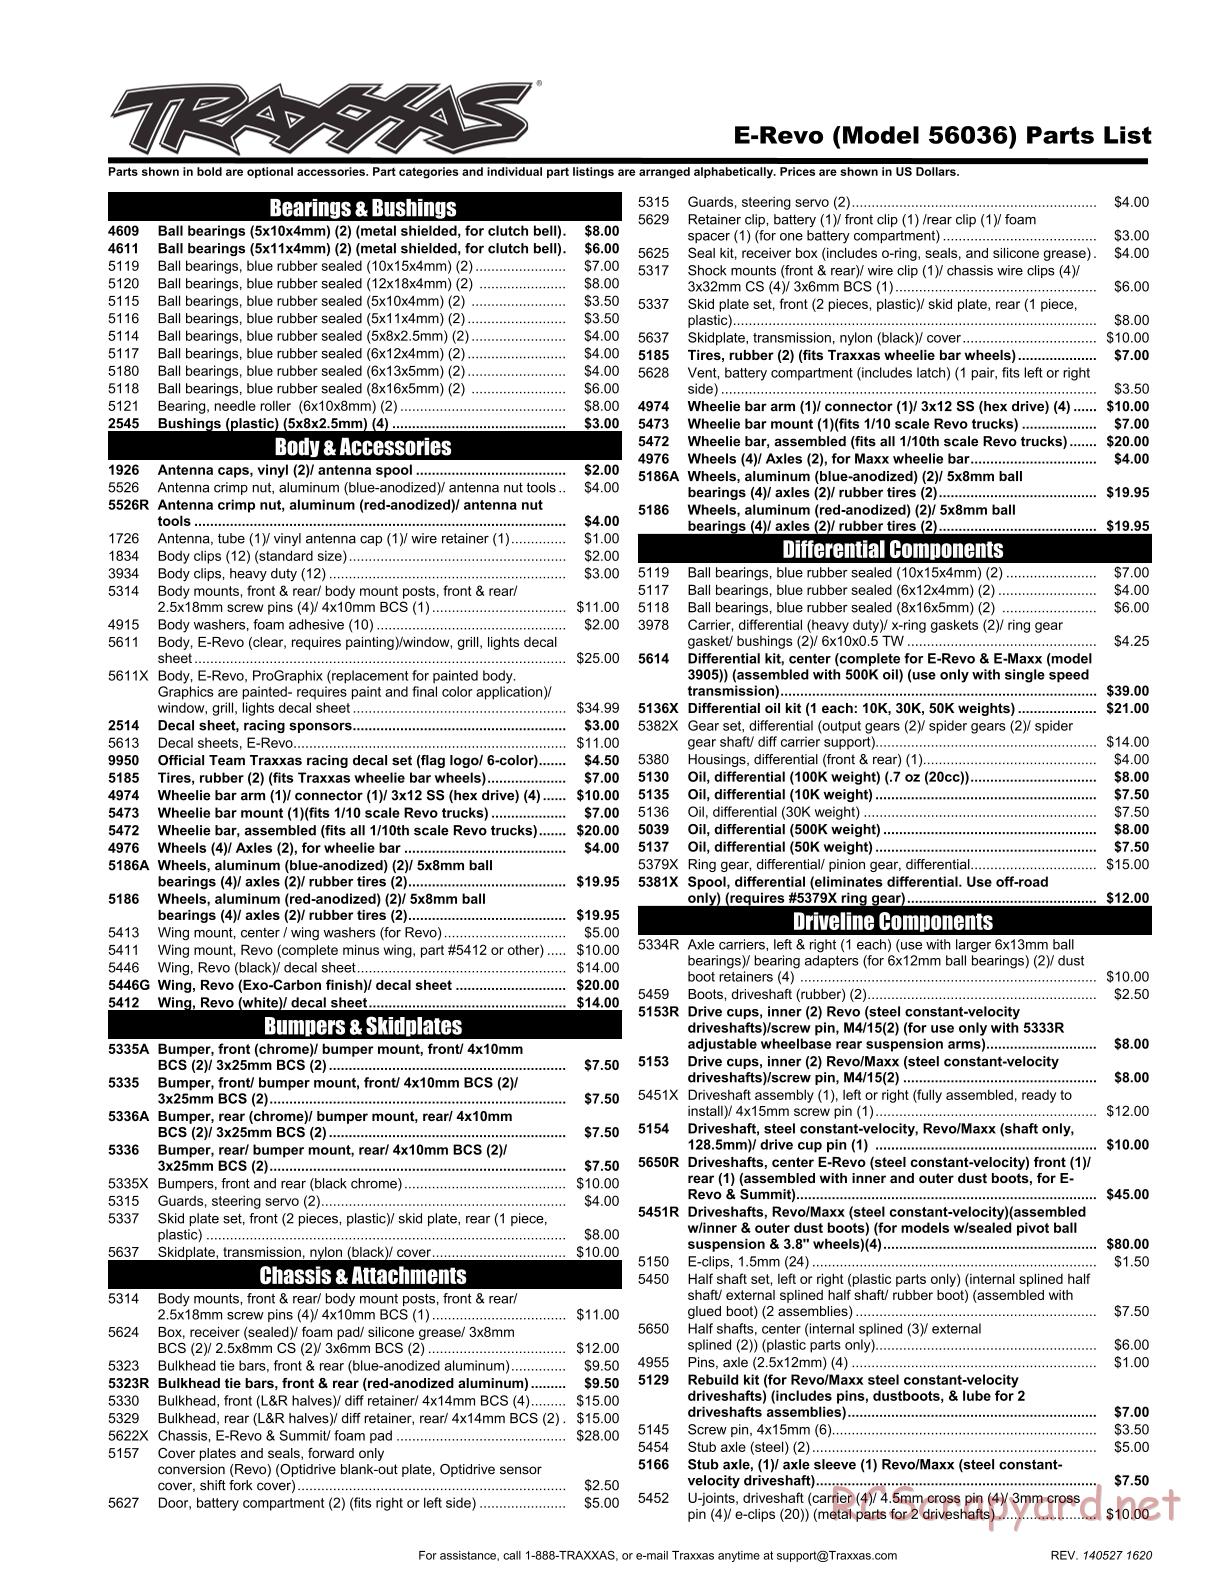 Traxxas - E-Revo (2014) - Parts List - Page 1